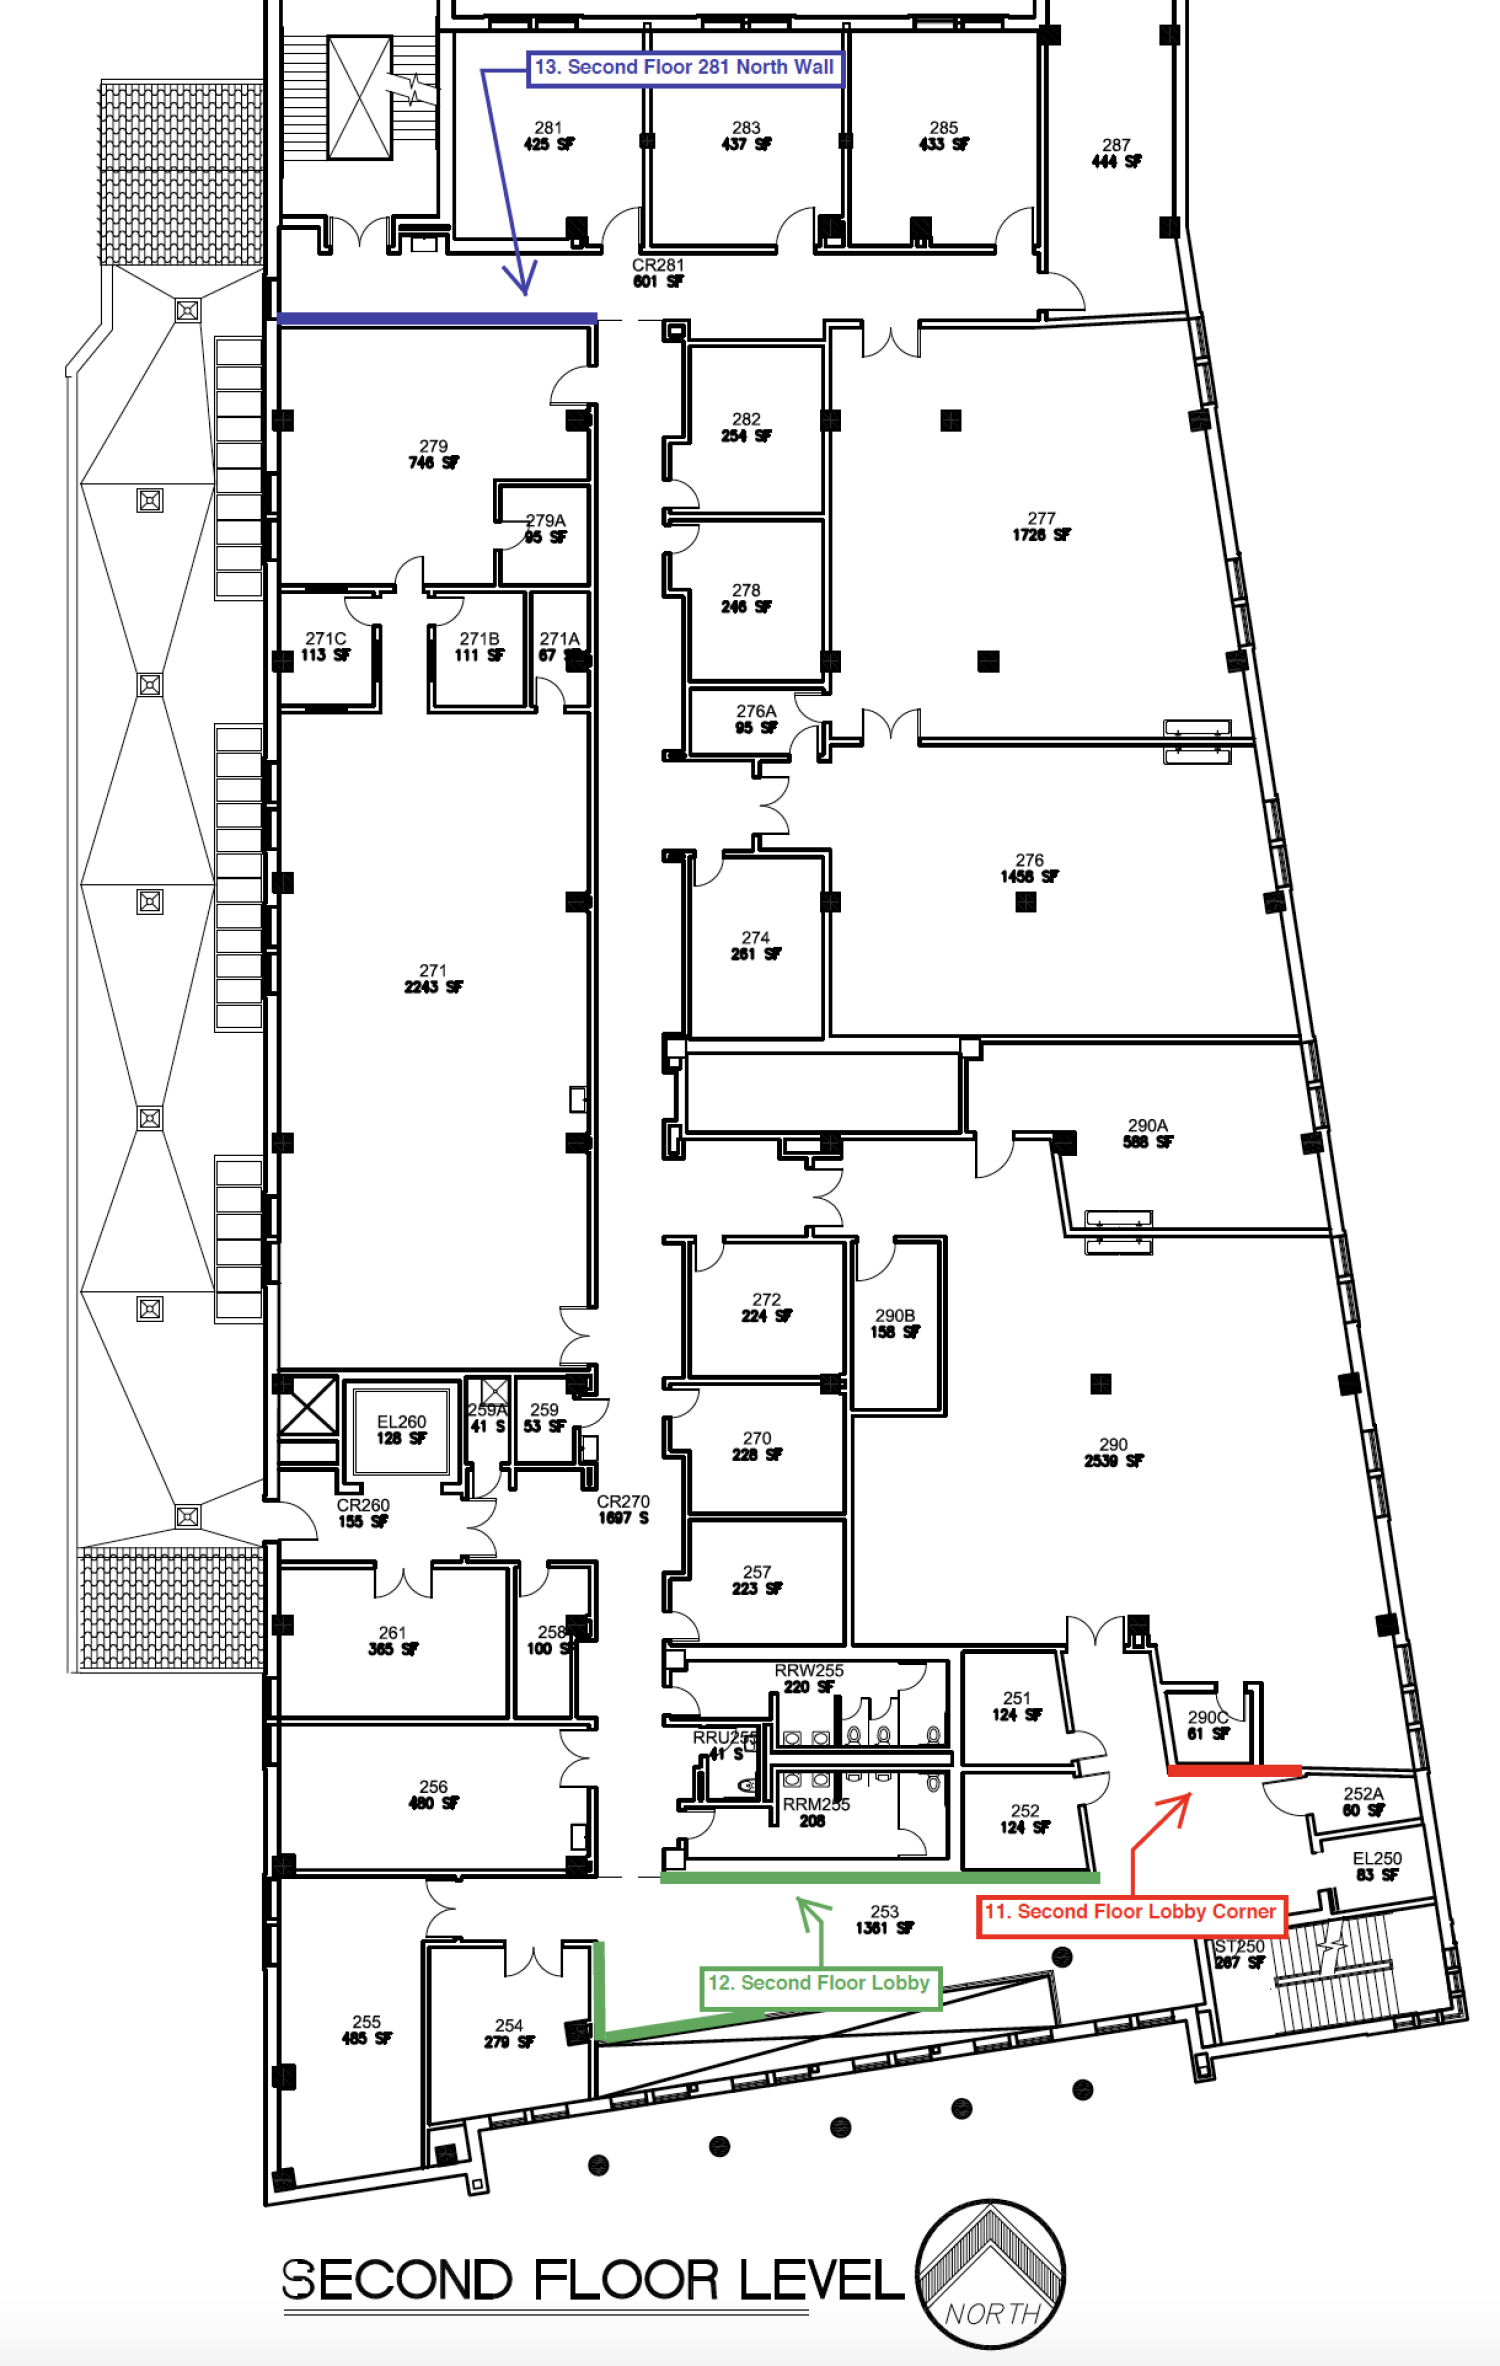 schematic for building second floor